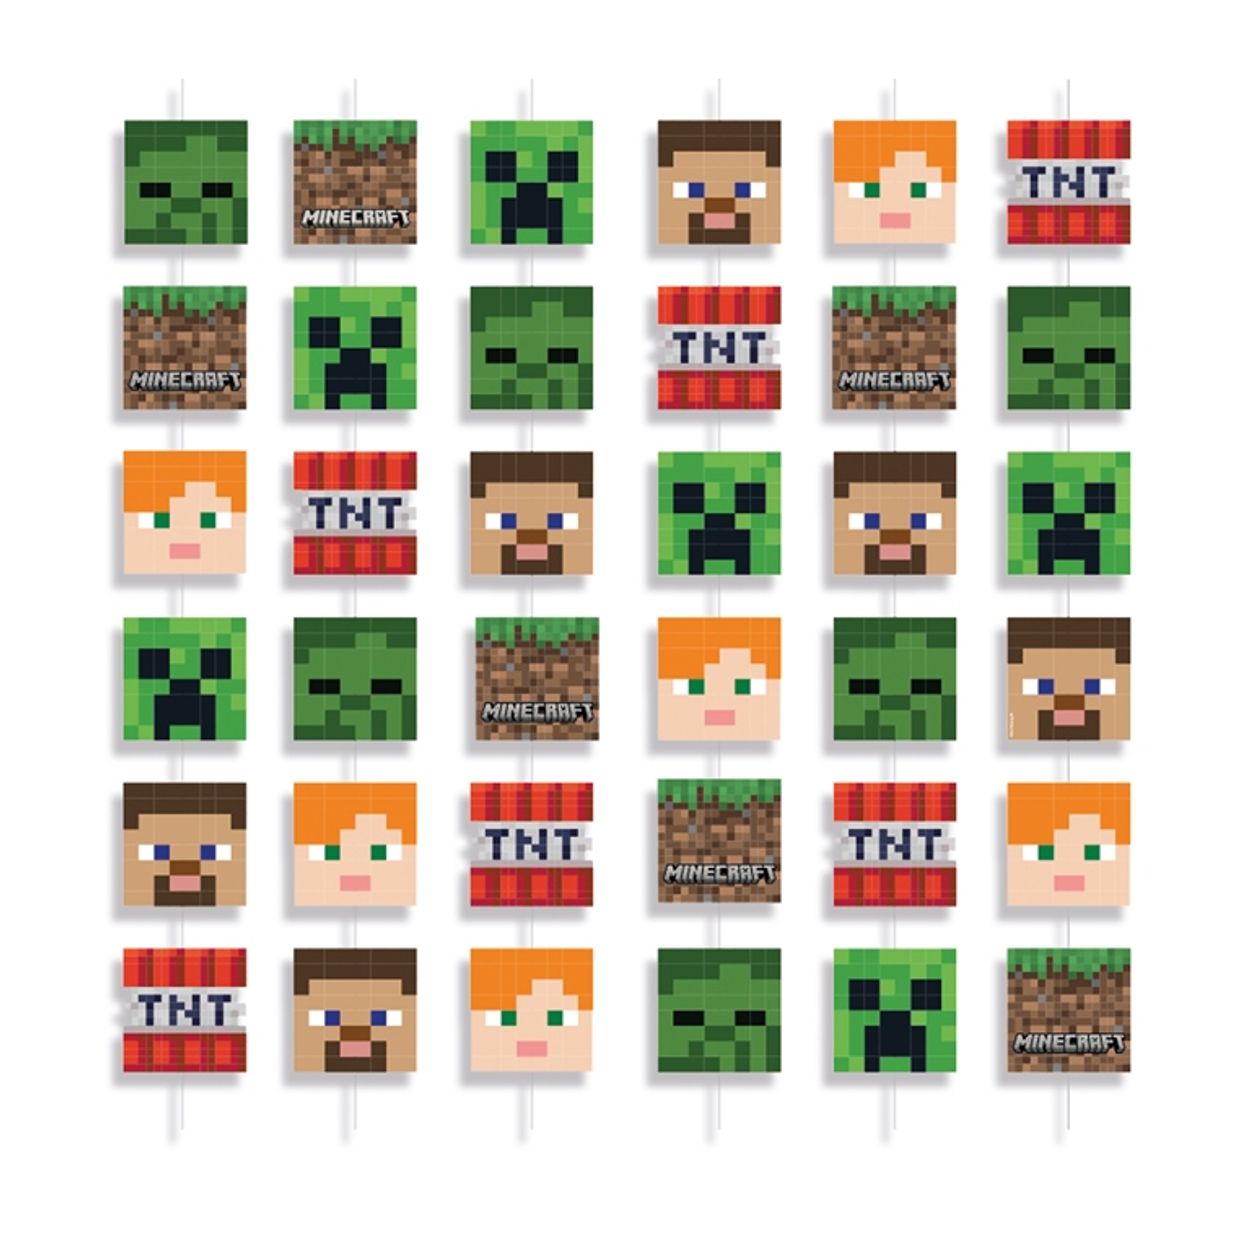 Cachepot Minecraft 11,5X11,5X11,5 - 8 Un - Festas da 25